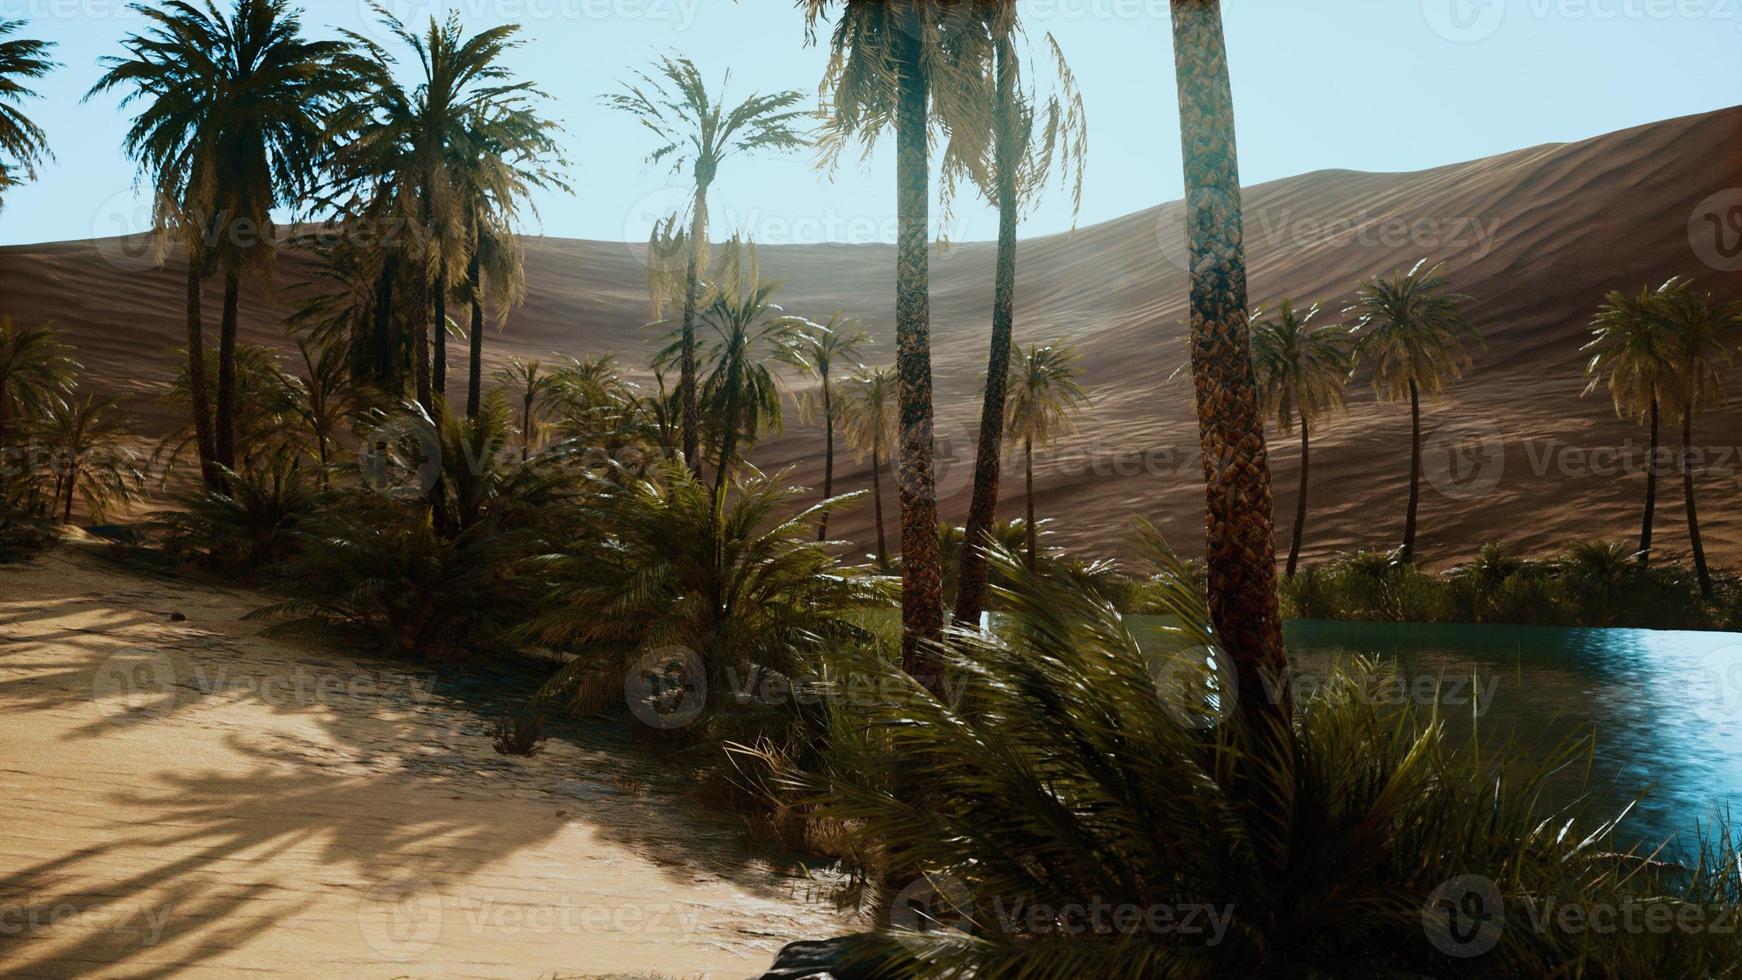 oásis com palmeiras no deserto foto